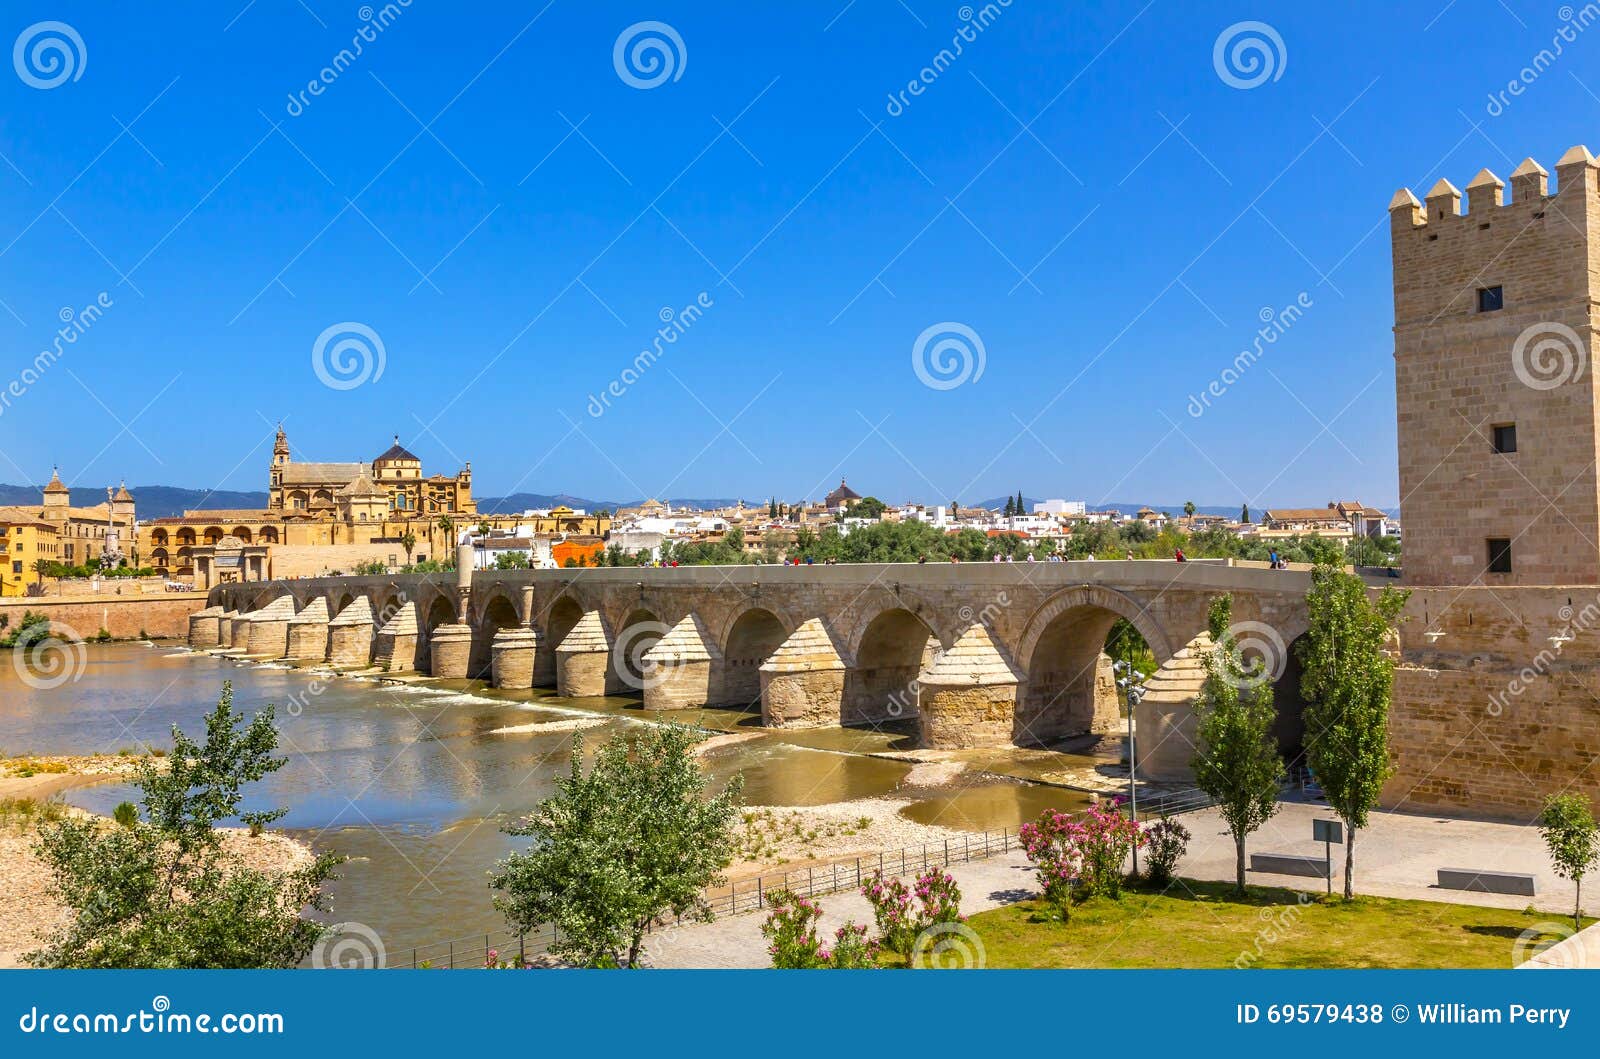 ancient roman bridge entrance river guadalquivir cordoba spain